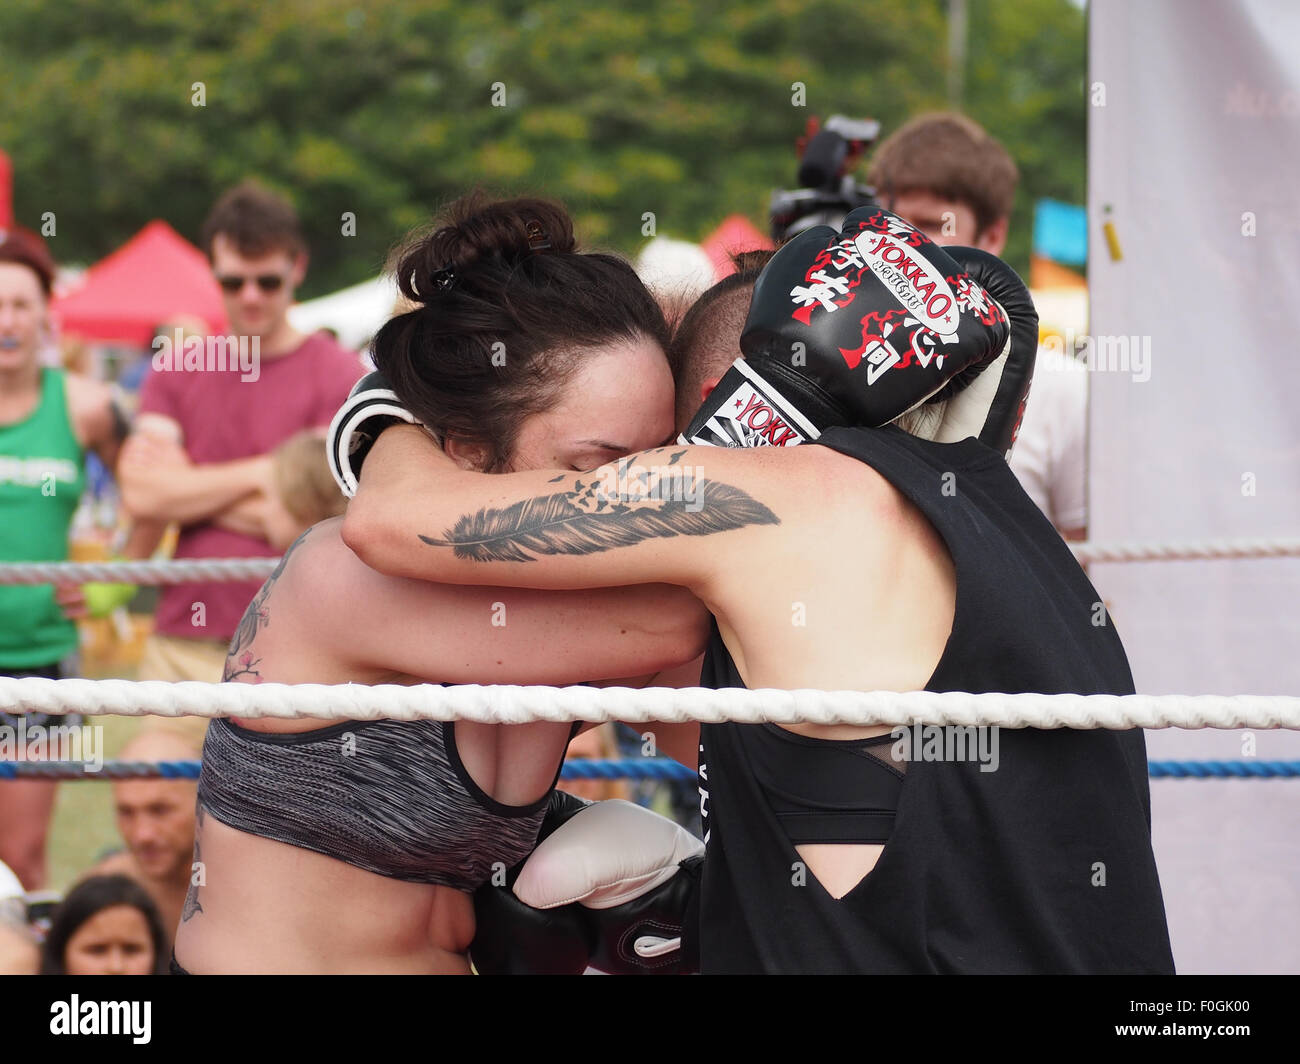 Les boxeurs de Muay Thai, combattant dans un anneau extérieur Banque D'Images